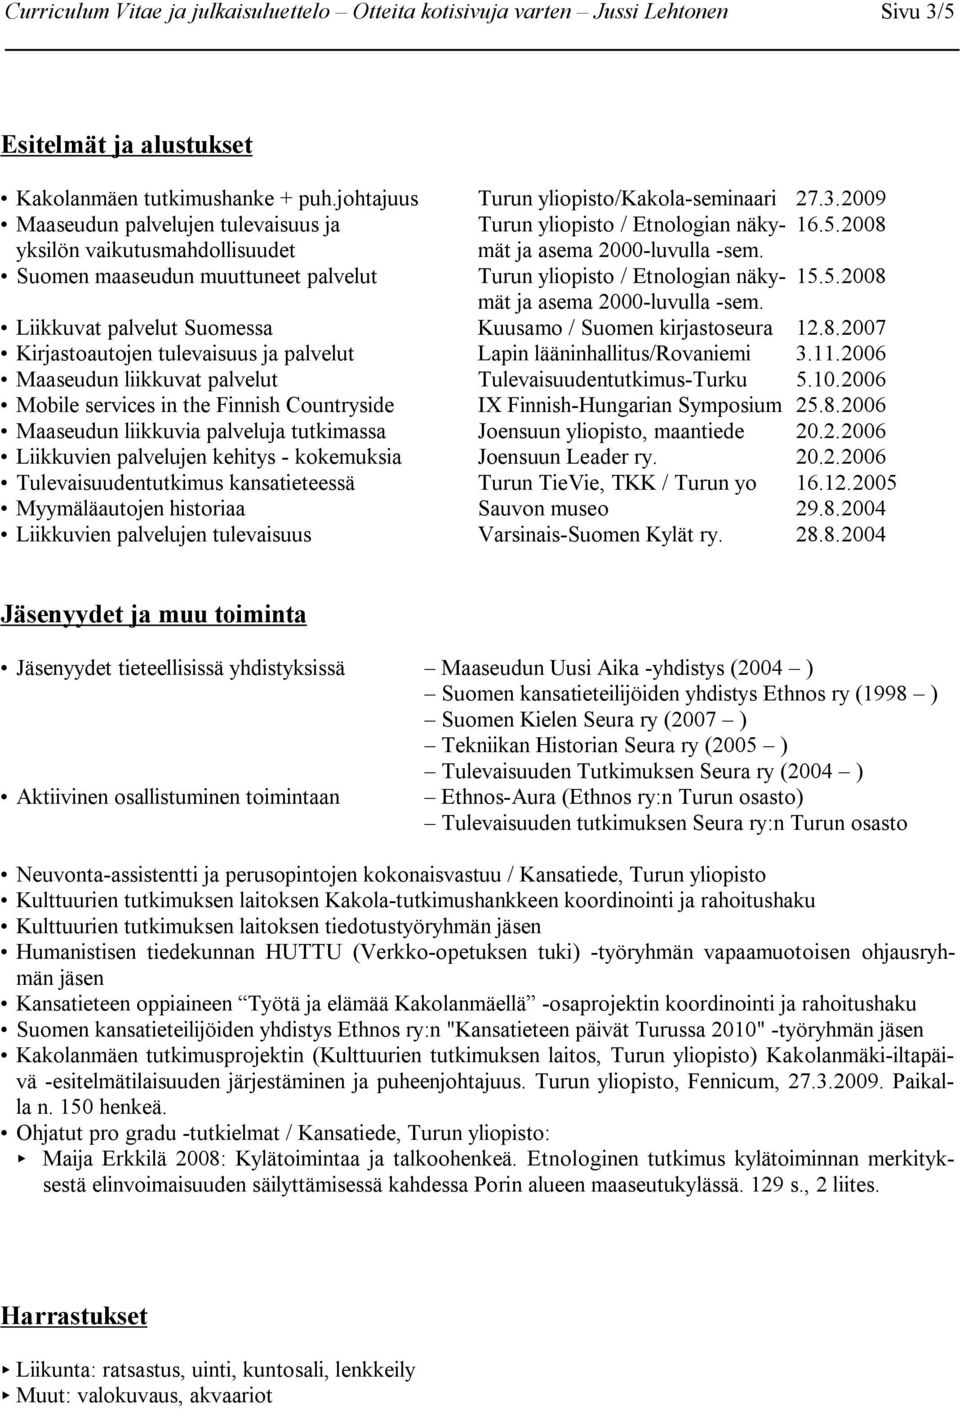 Liikkuvat palvelut Suomessa Kuusamo / Suomen kirjastoseura 12.8.2007 Kirjastoautojen tulevaisuus ja palvelut Lapin lääninhallitus/rovaniemi 3.11.